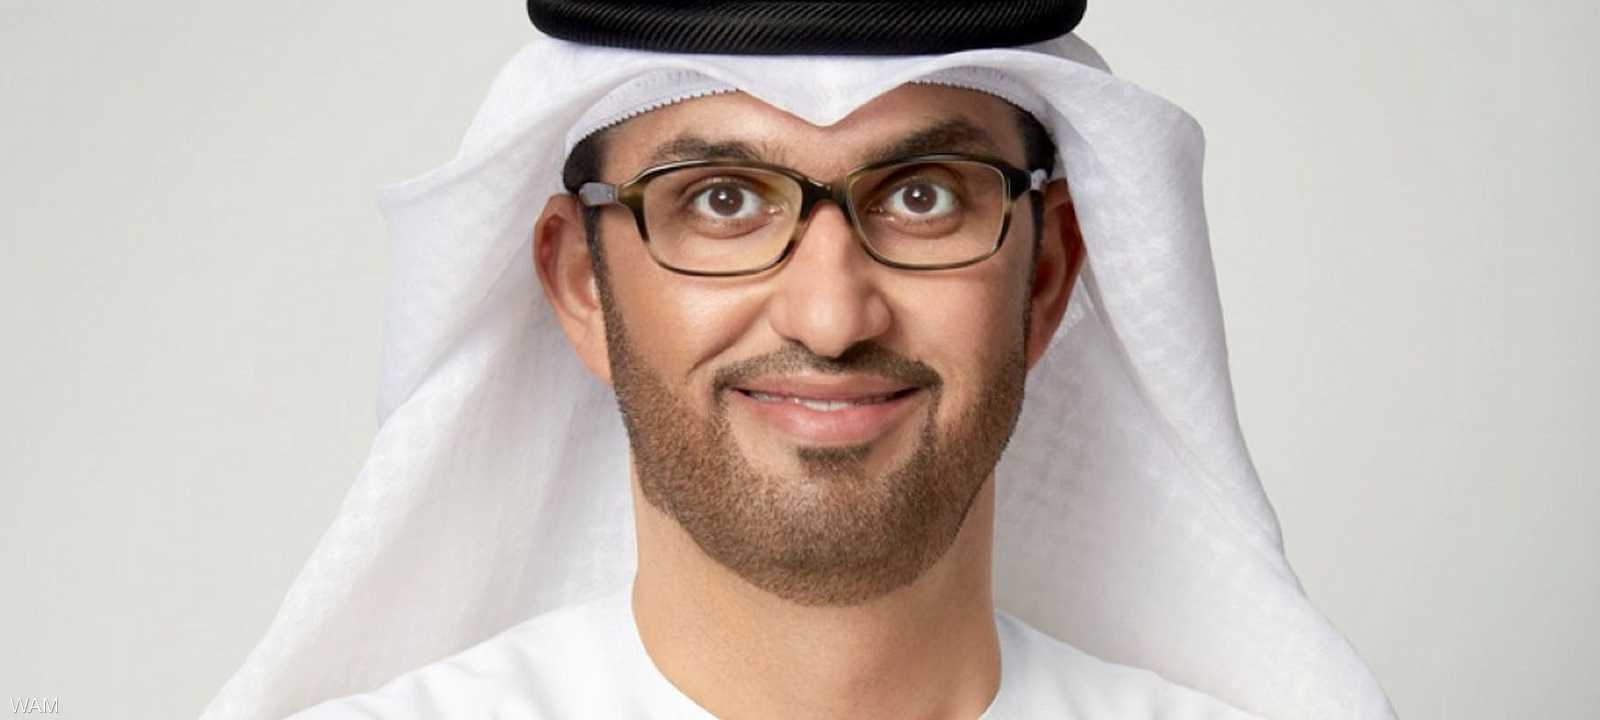 وزير الصناعة والتكنولوجيا المتقدمة الدكتور سلطان الجابر